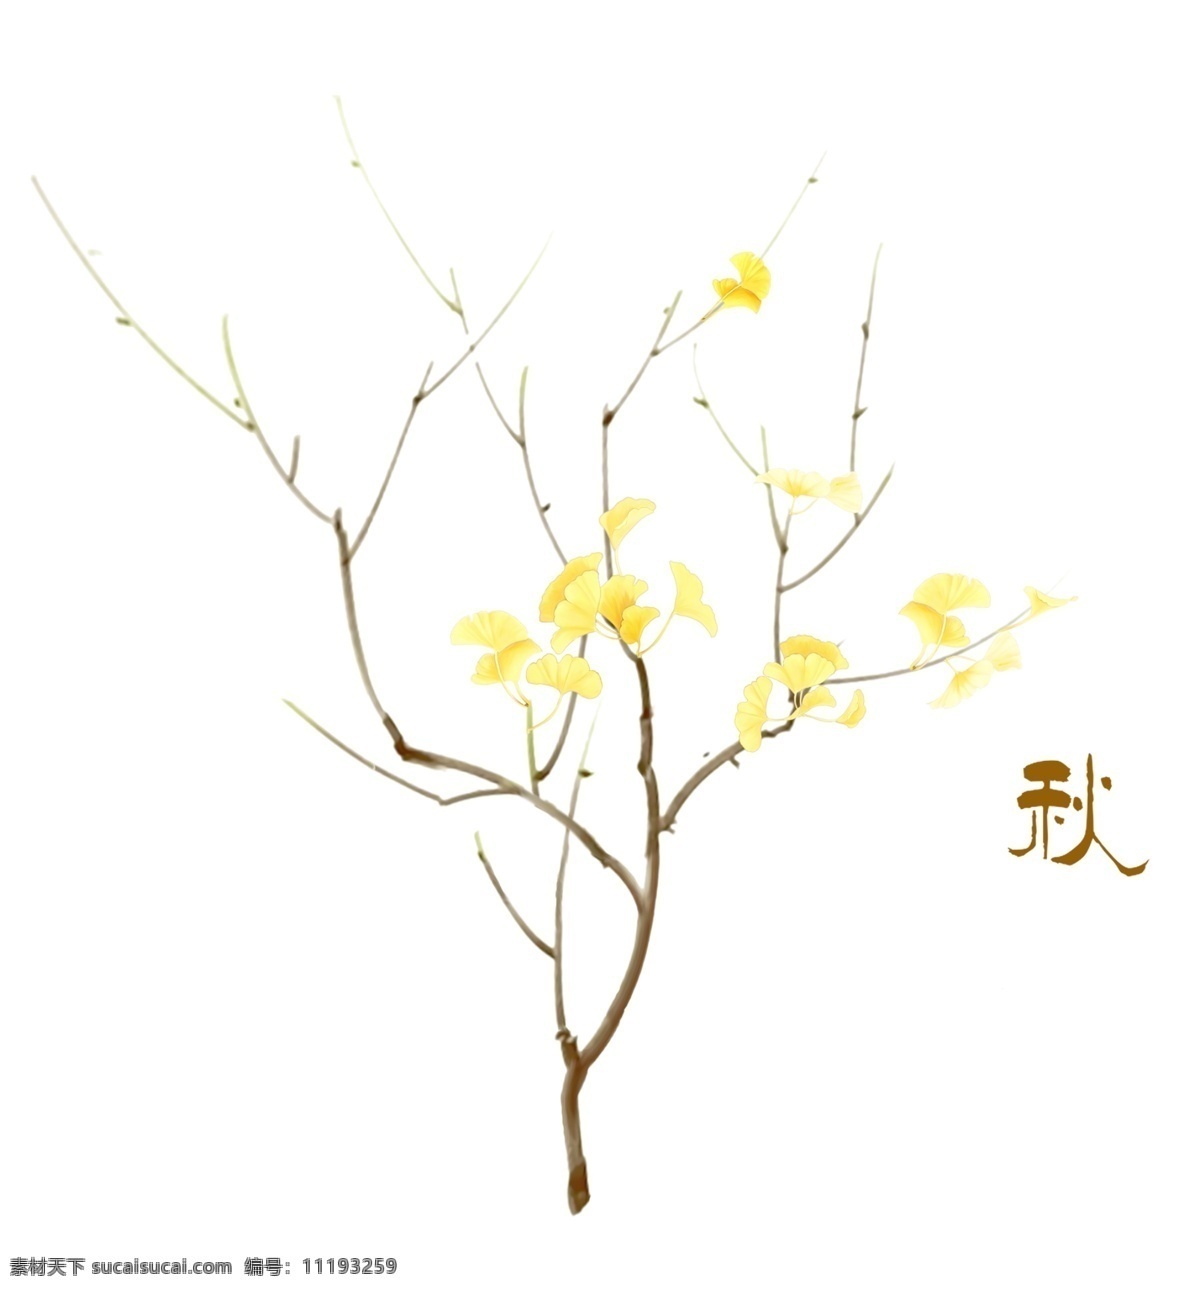 秋天 秋 银杏叶 叶子 树木 黄色叶子 树叶 文化艺术 绘画书法